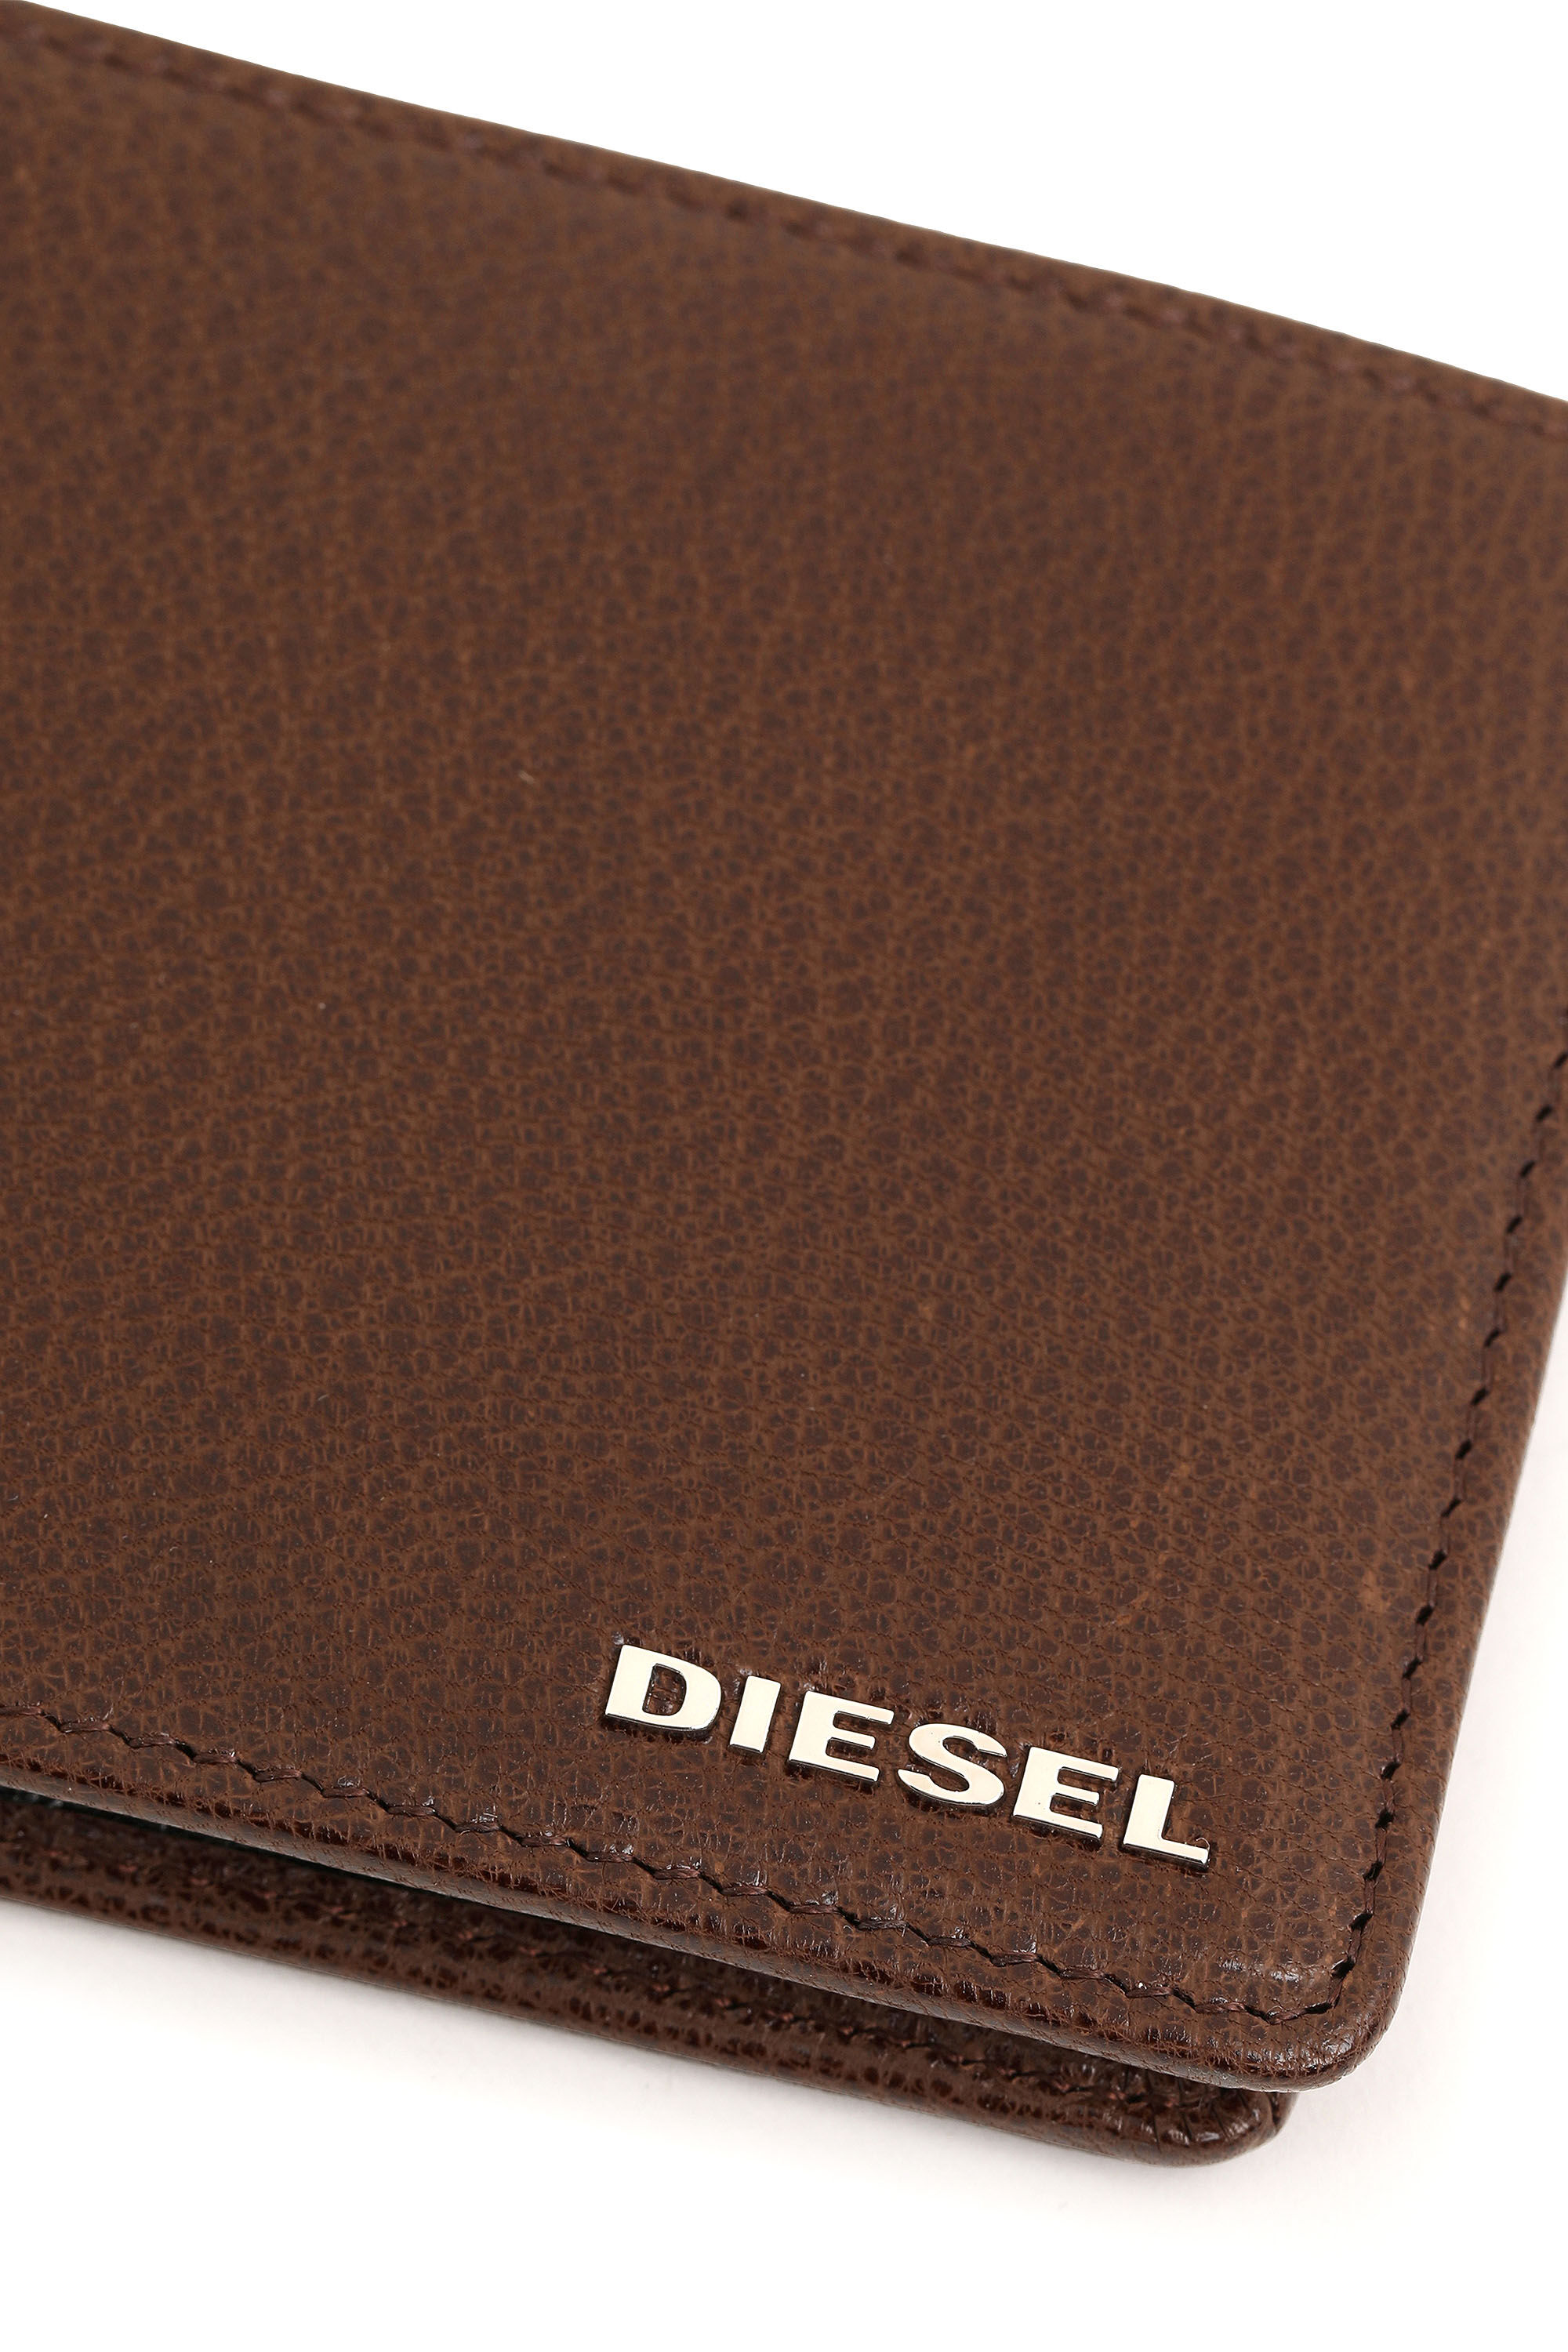 Diesel - HIRESH S, Brown - Image 4